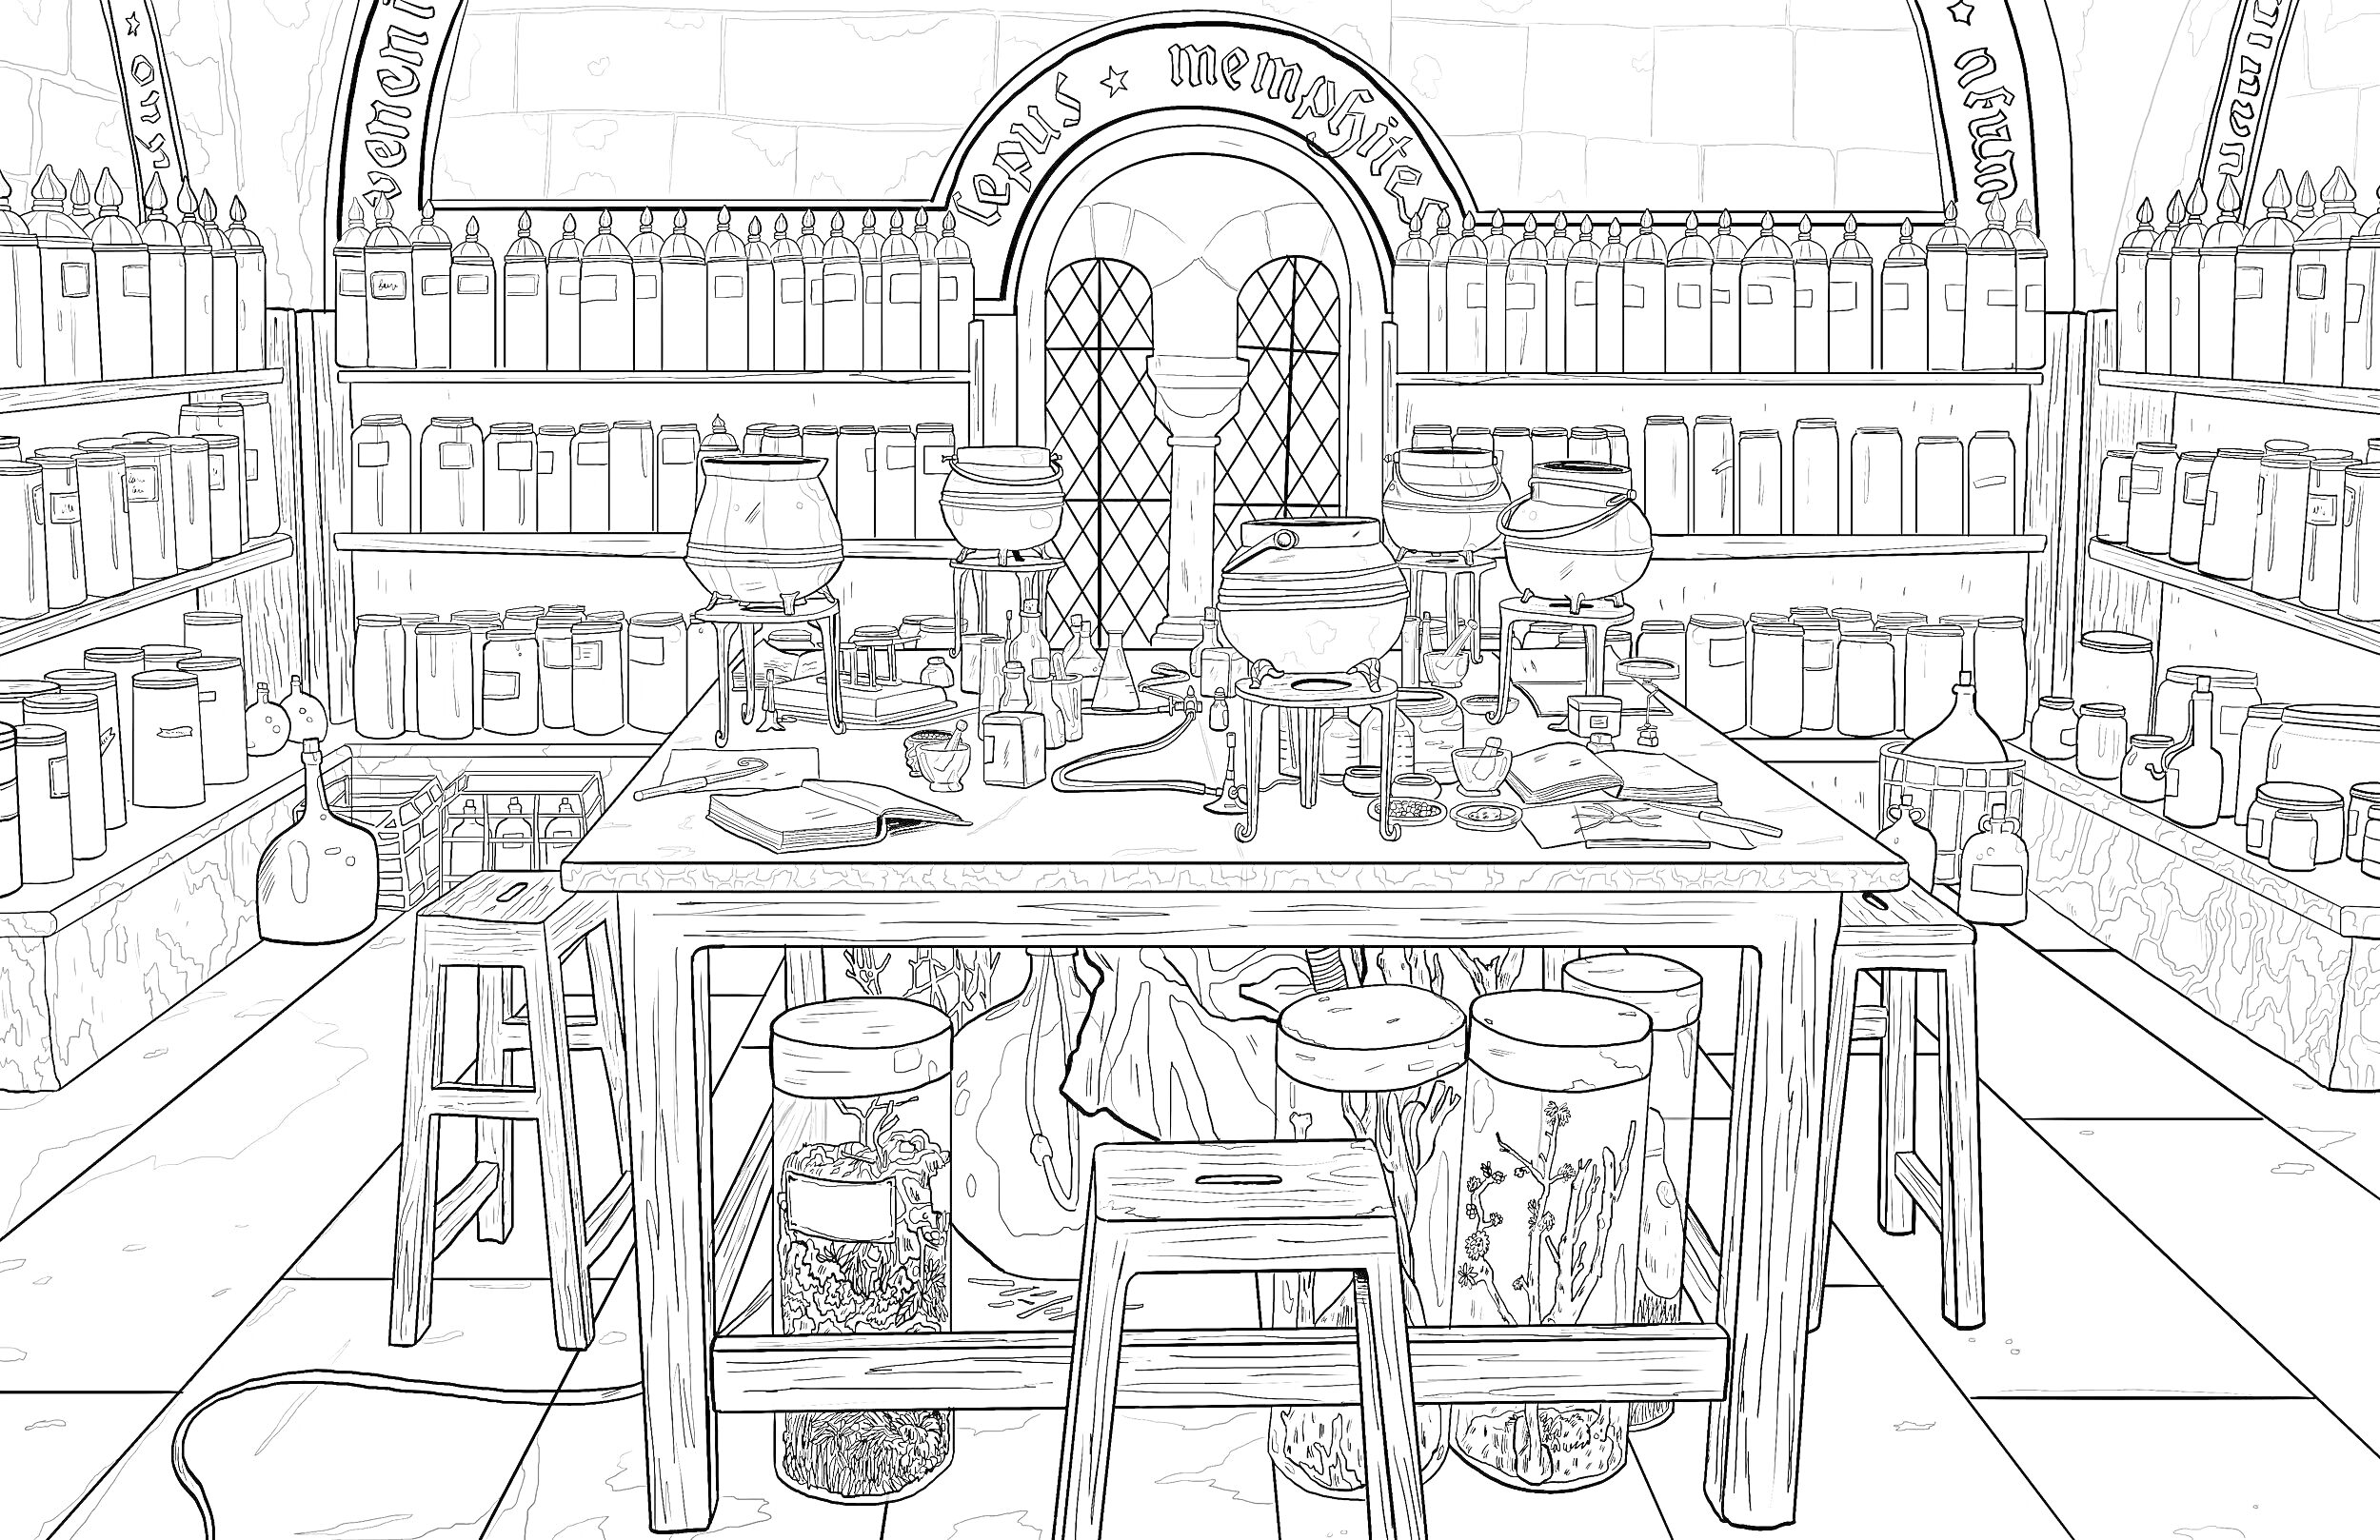 Раскраска Лаборатория зелий в школе чародейства и волшебства - длинный стол с колбами и котлами, стулья, полки с книгами и бутылками, окна с арками